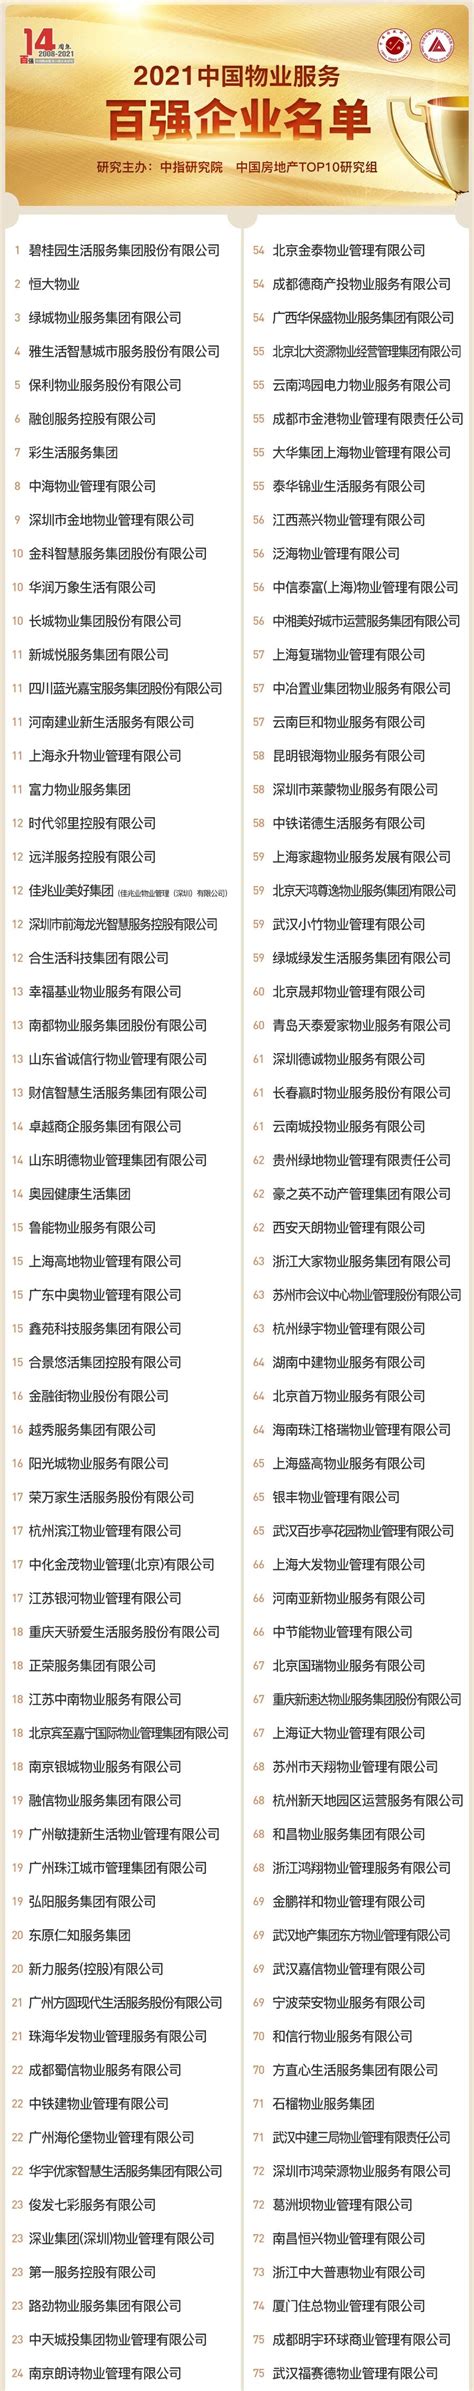 最新！2021年中国百强物业排名榜单出炉 这些小区上榜!-厦门蓝房网